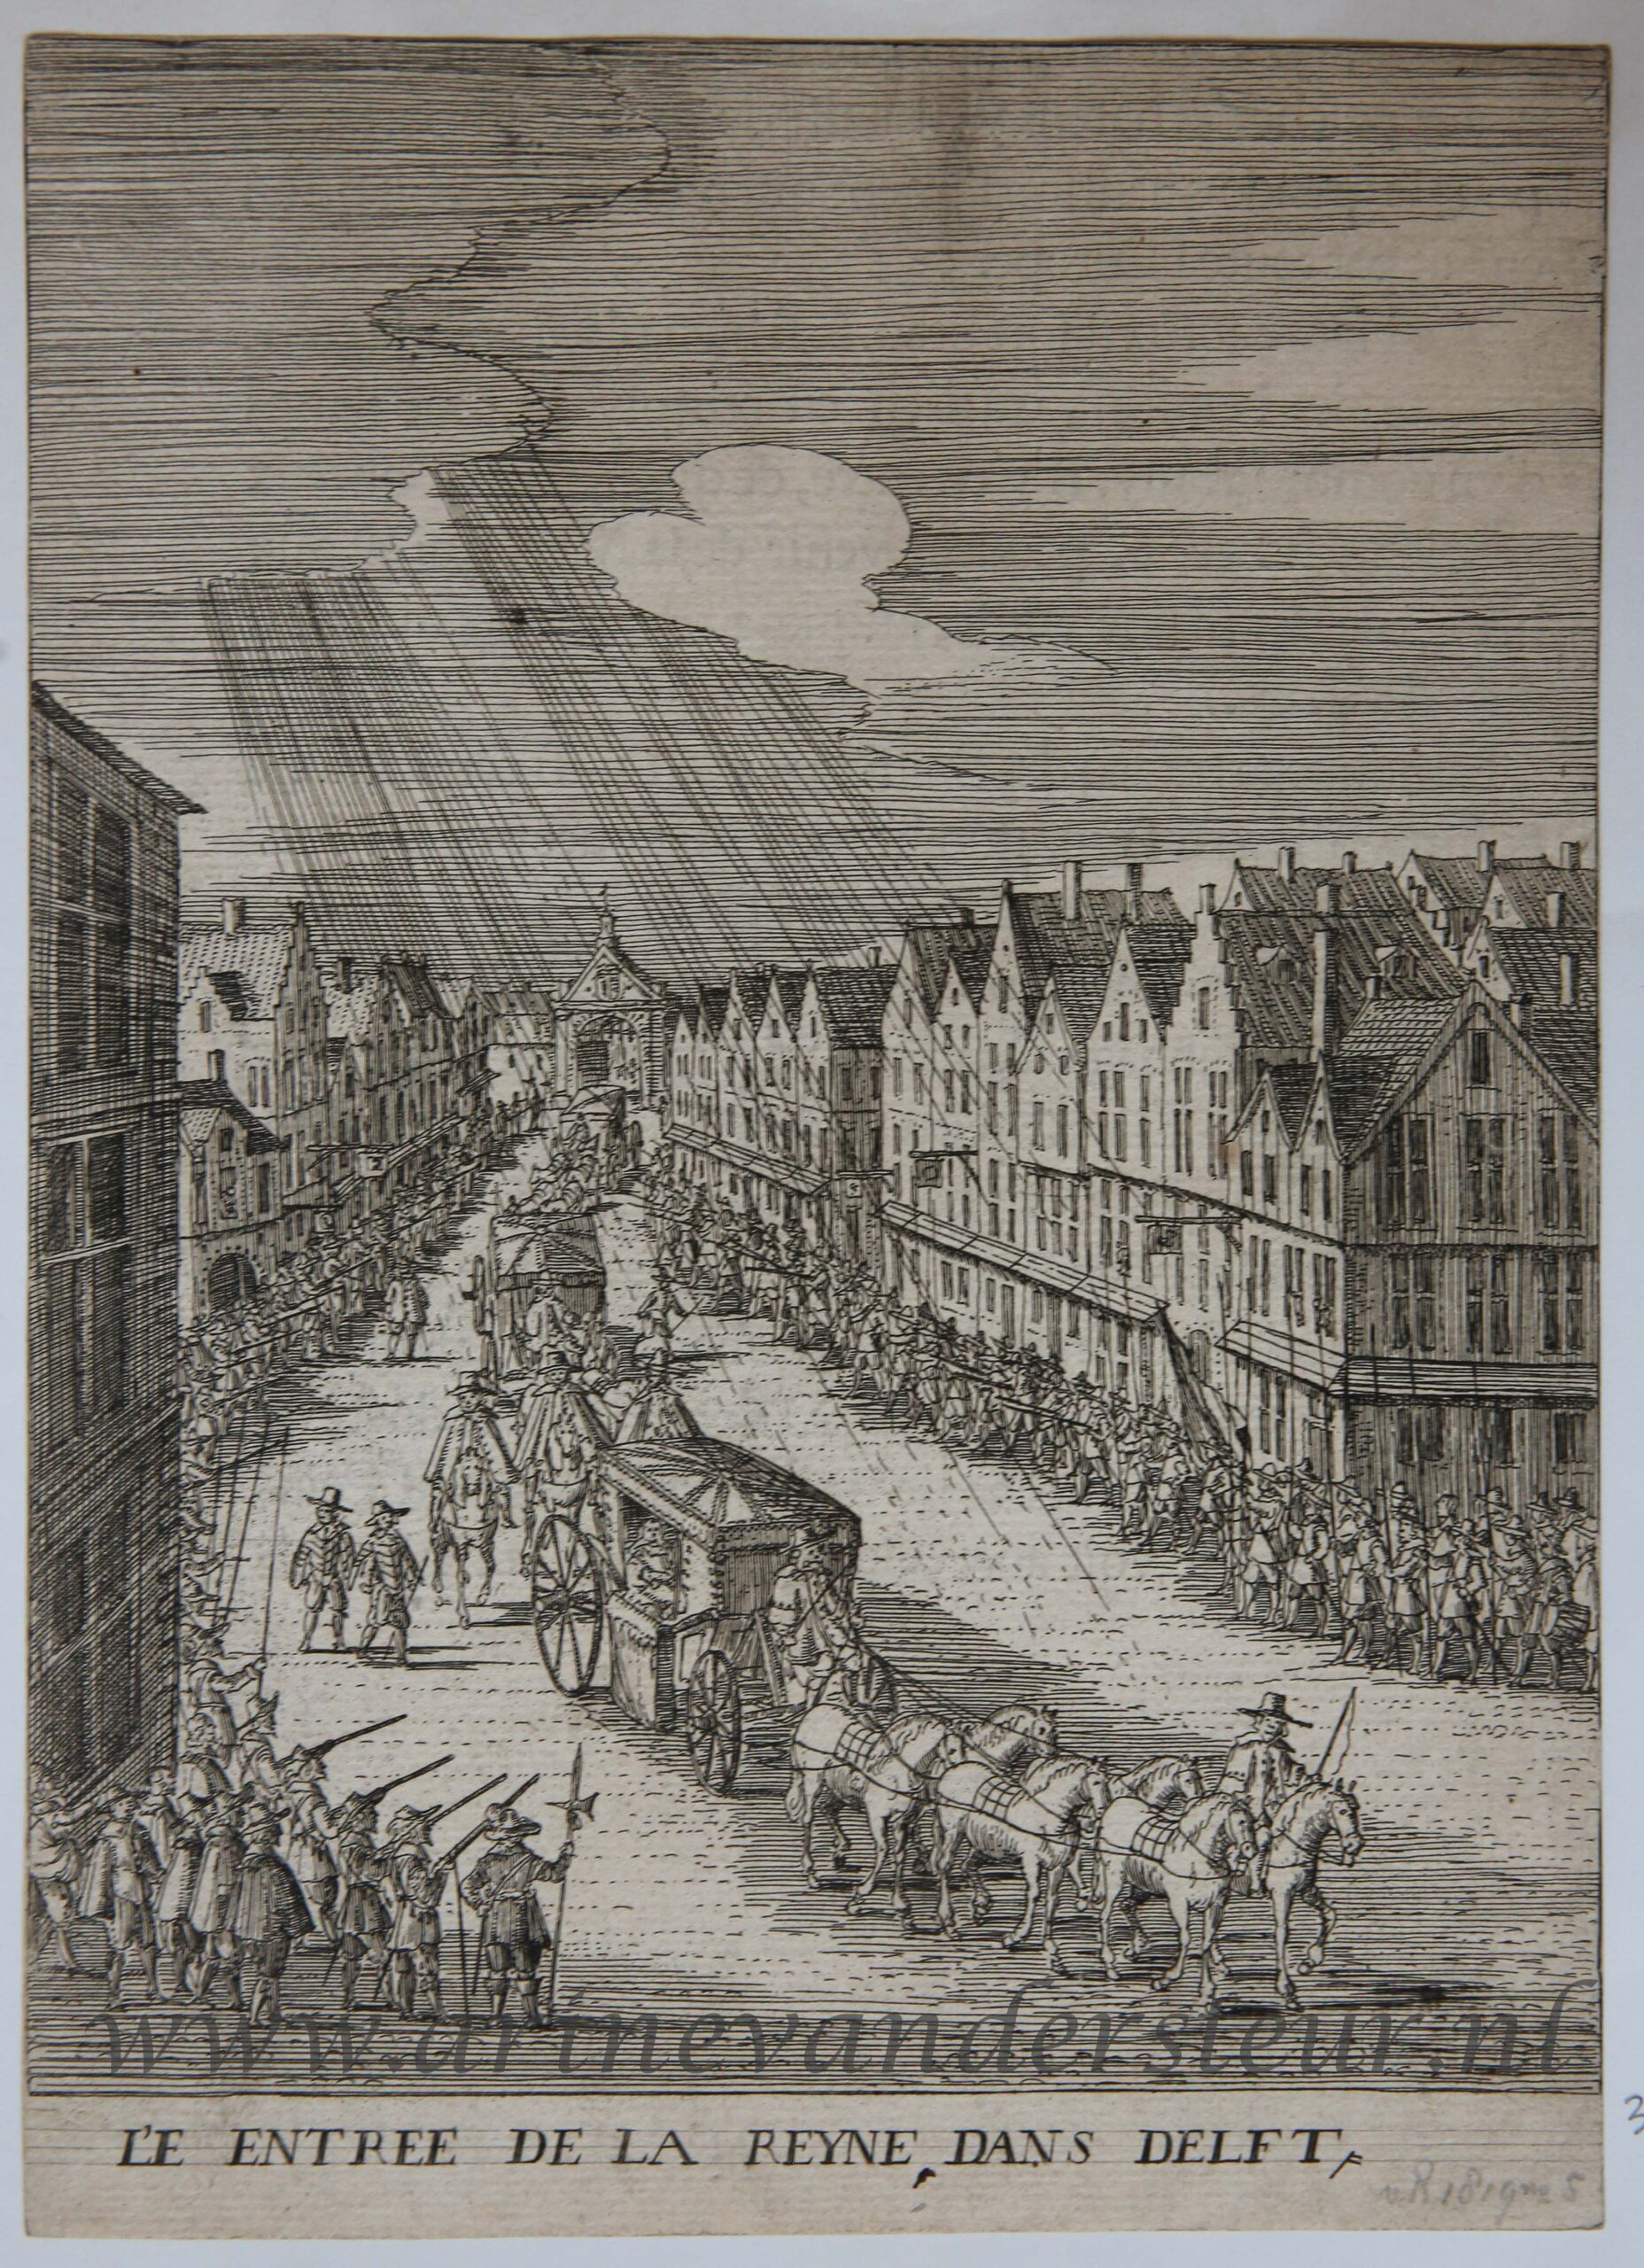  - [Antique print, etching] L'e entree de la reyne dans Delft [Maria de' Medici], published 1639.